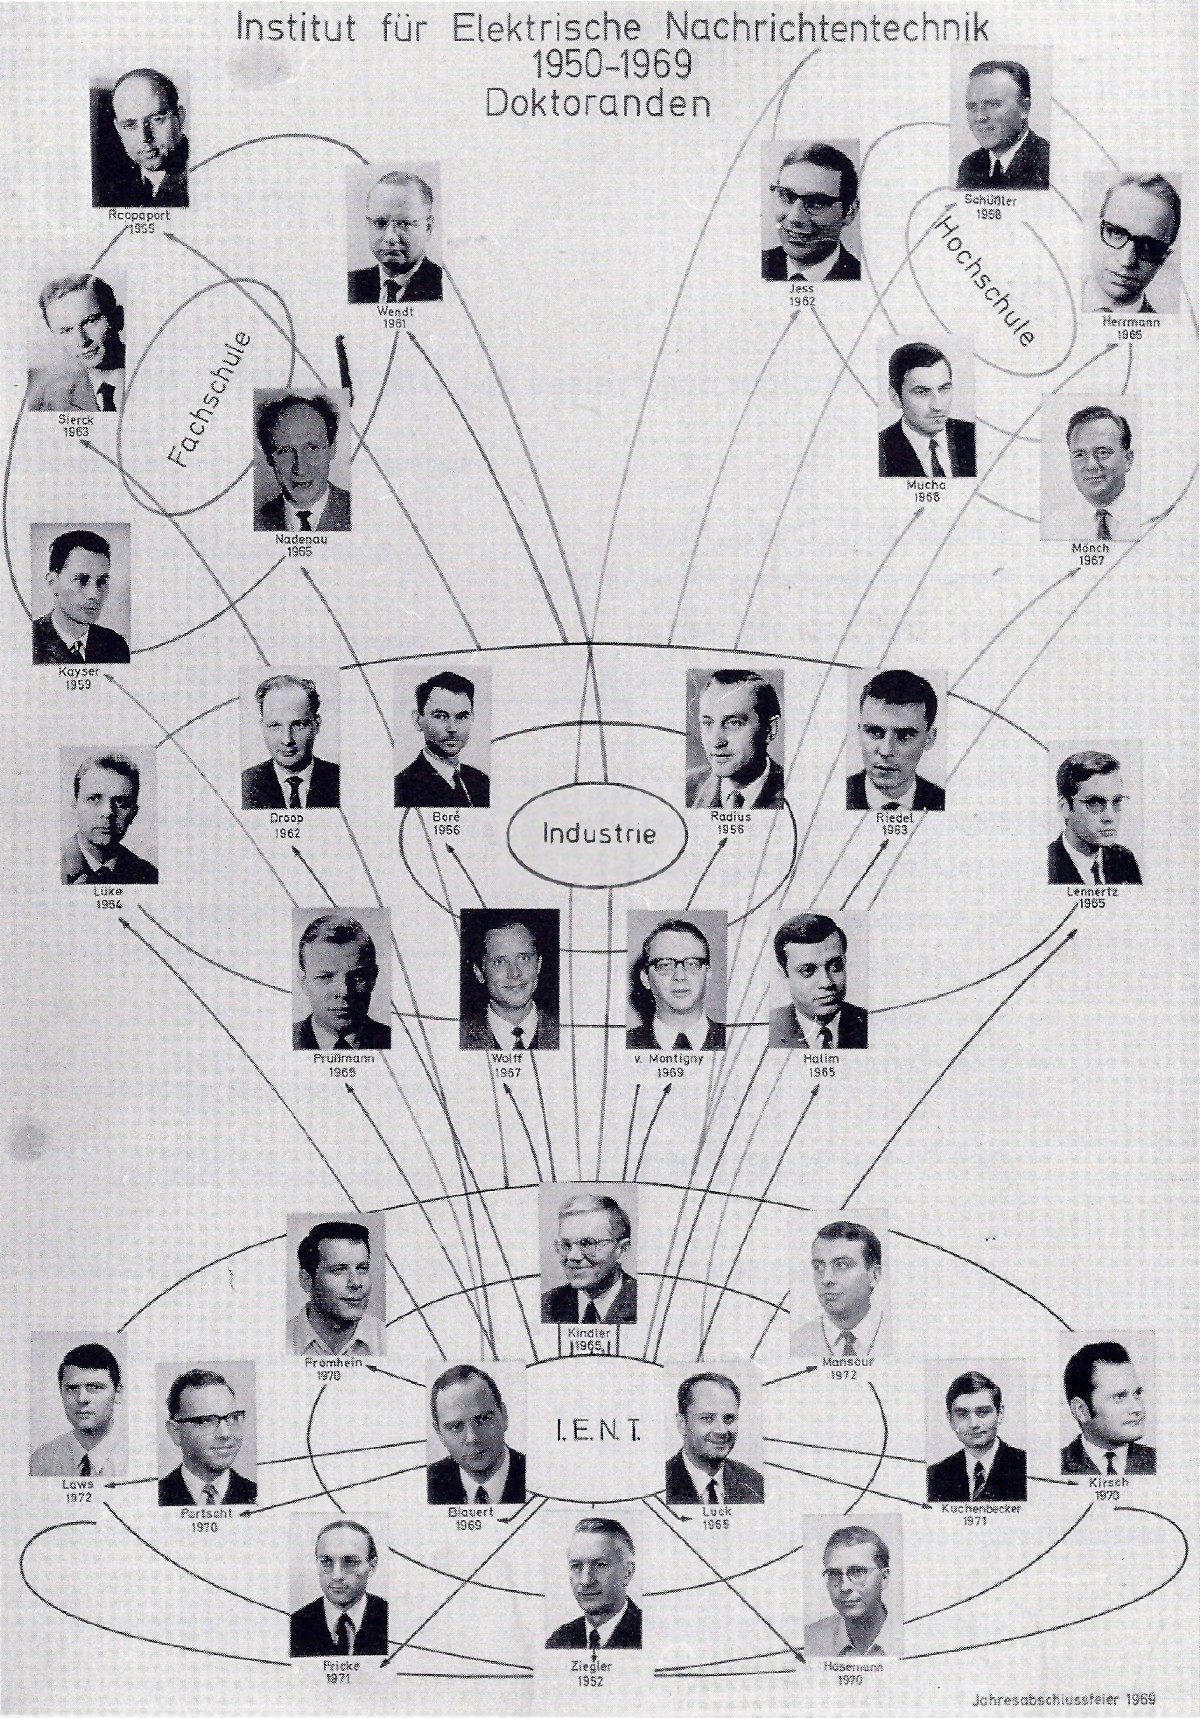 Doktoranden 1950-1972